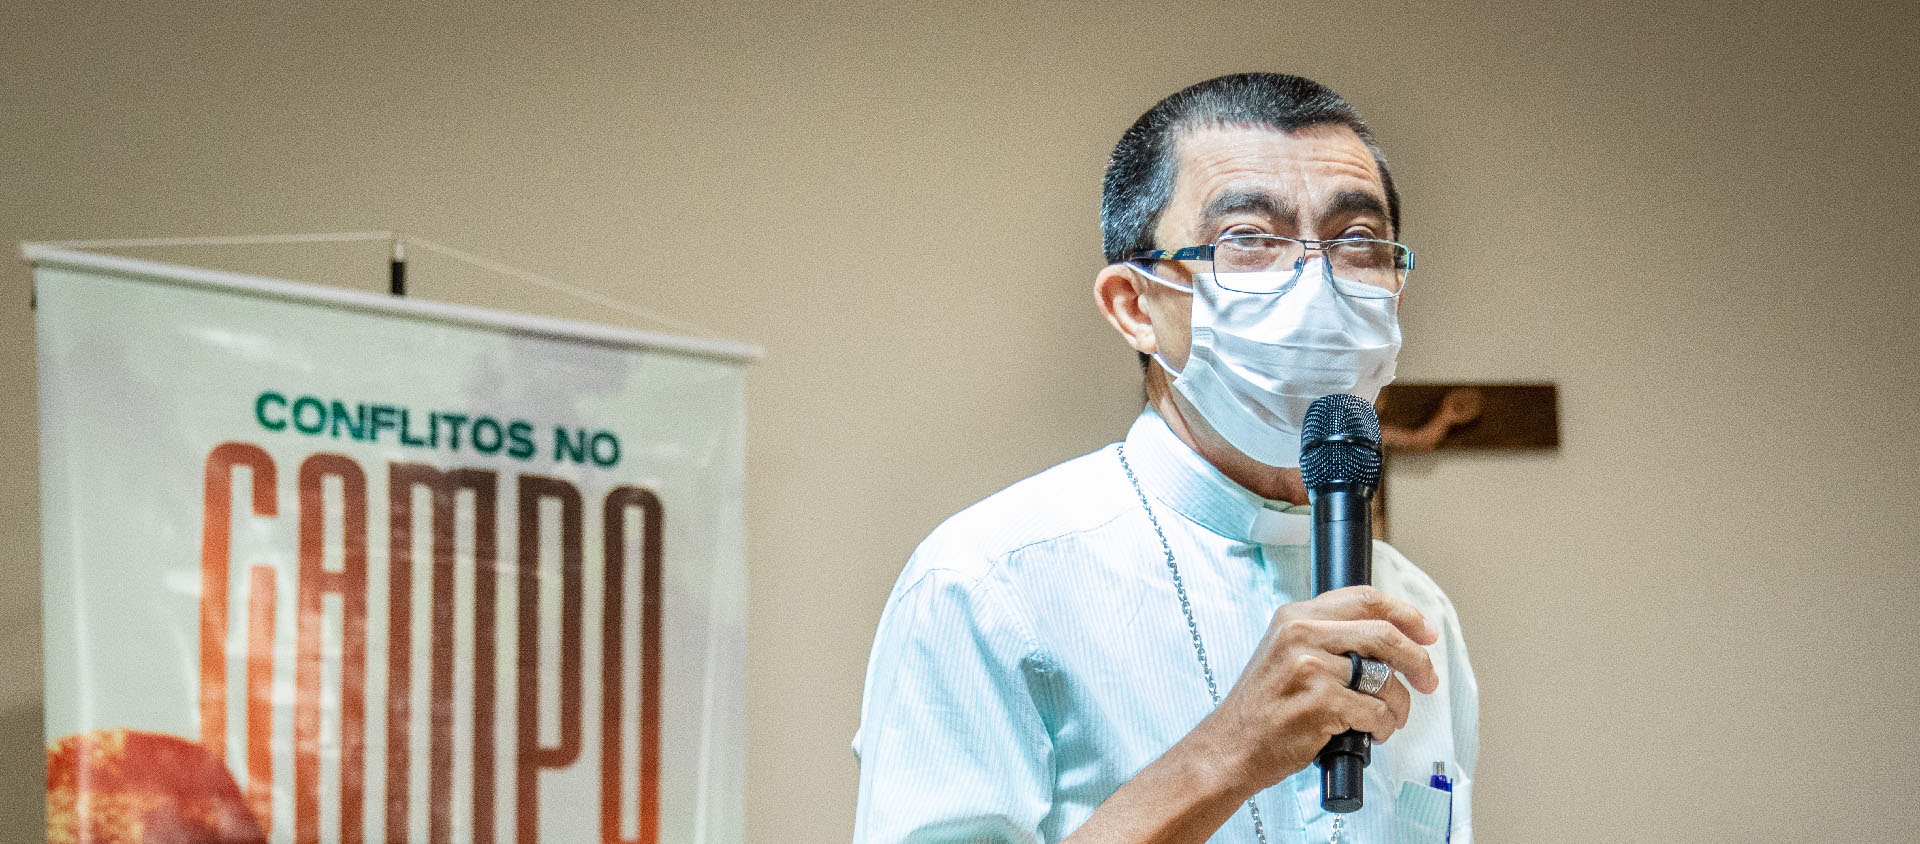 Mgr Jose Ionilton, président de la CPT, déplore la violence faite aux autochtones en Amazonie | © CPT